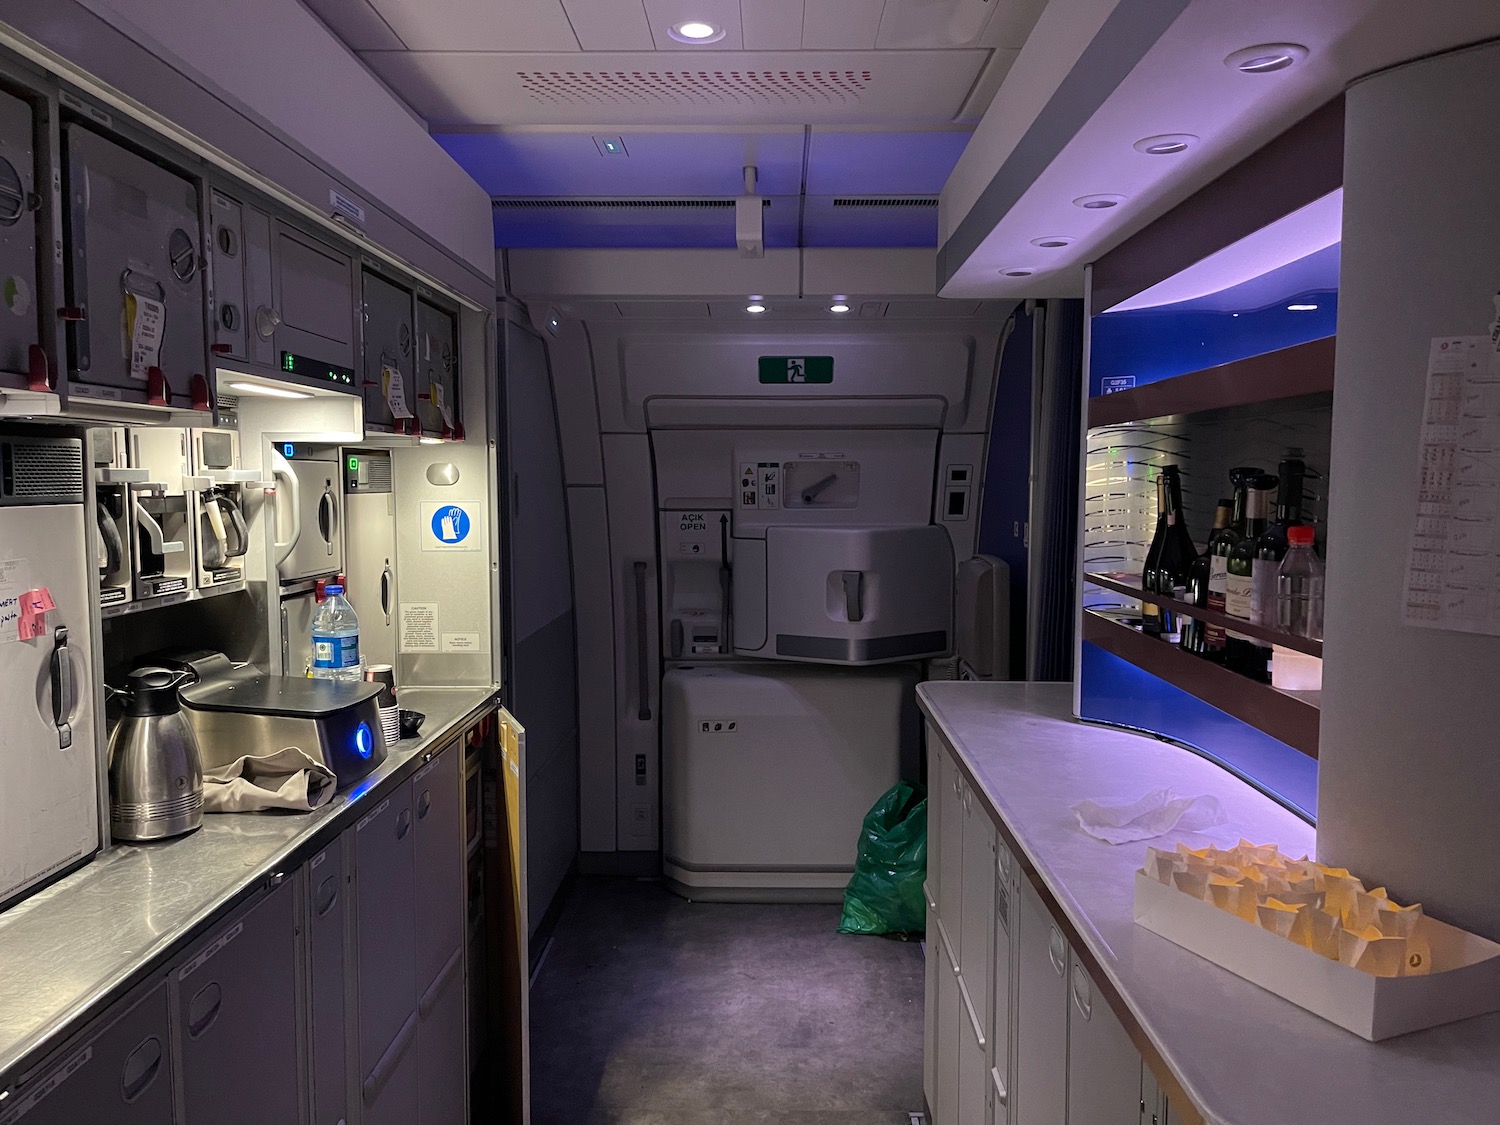 a kitchen inside a plane